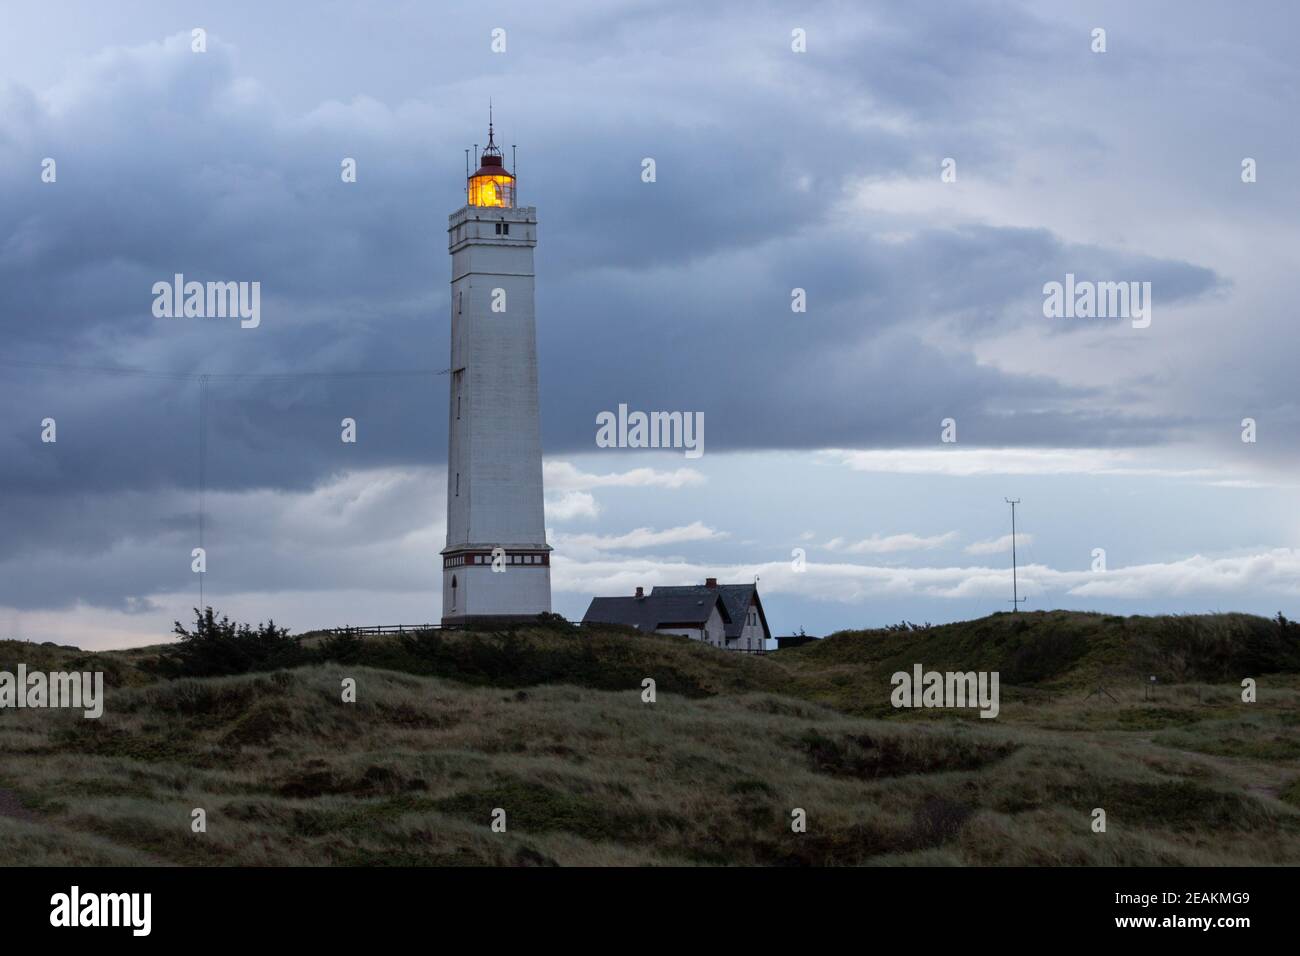 Drammatico cielo di preaurora al faro di Blavand in Danimarca Foto Stock